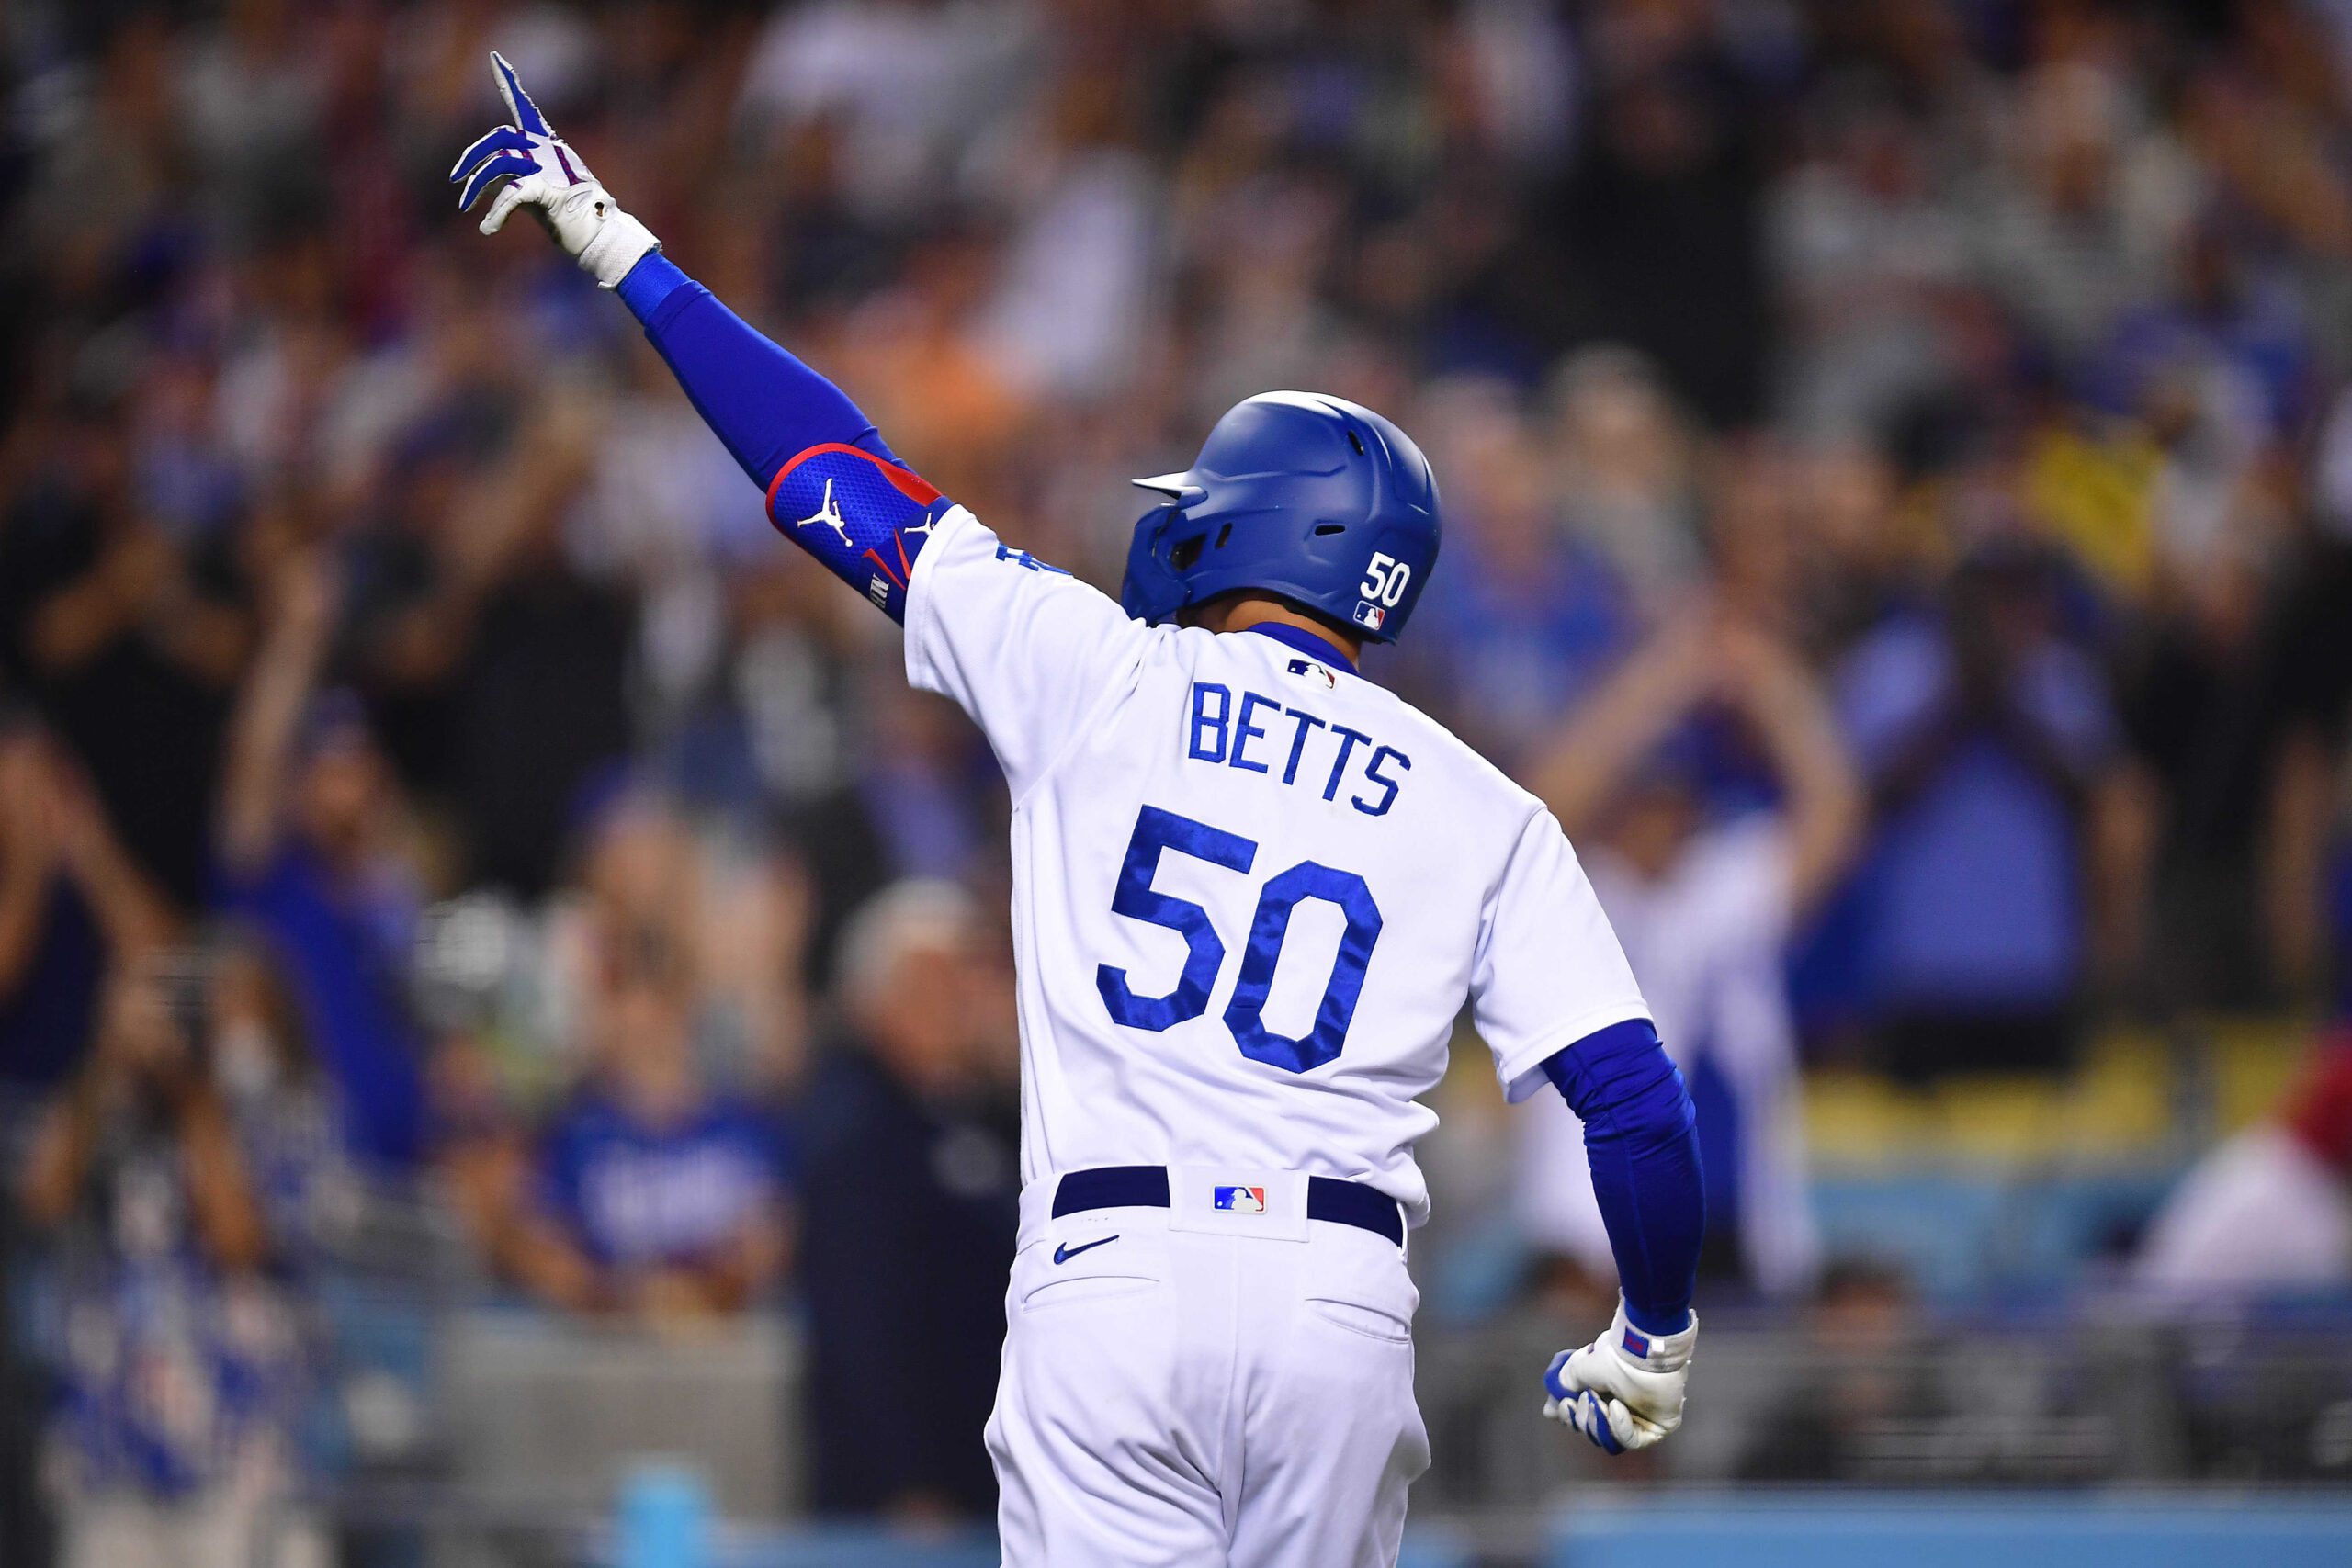 Mookie Betts, Los Angeles Dodgers right fielder